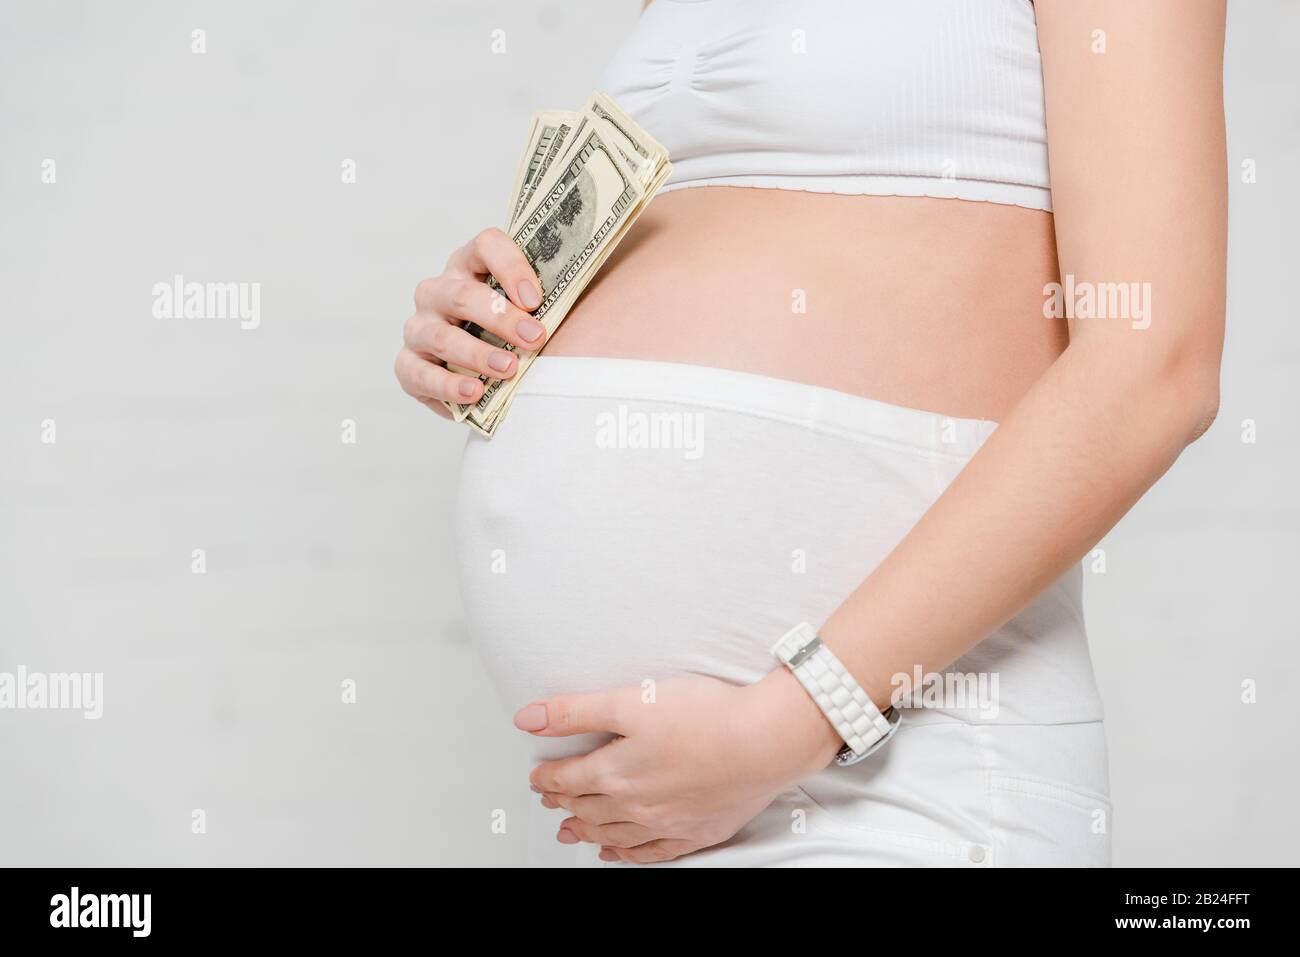 Vue réduite de la femme enceinte qui détient des billets en dollars et qui touche le ventre sur fond gris, concept de maternité de mères porteuses Banque D'Images